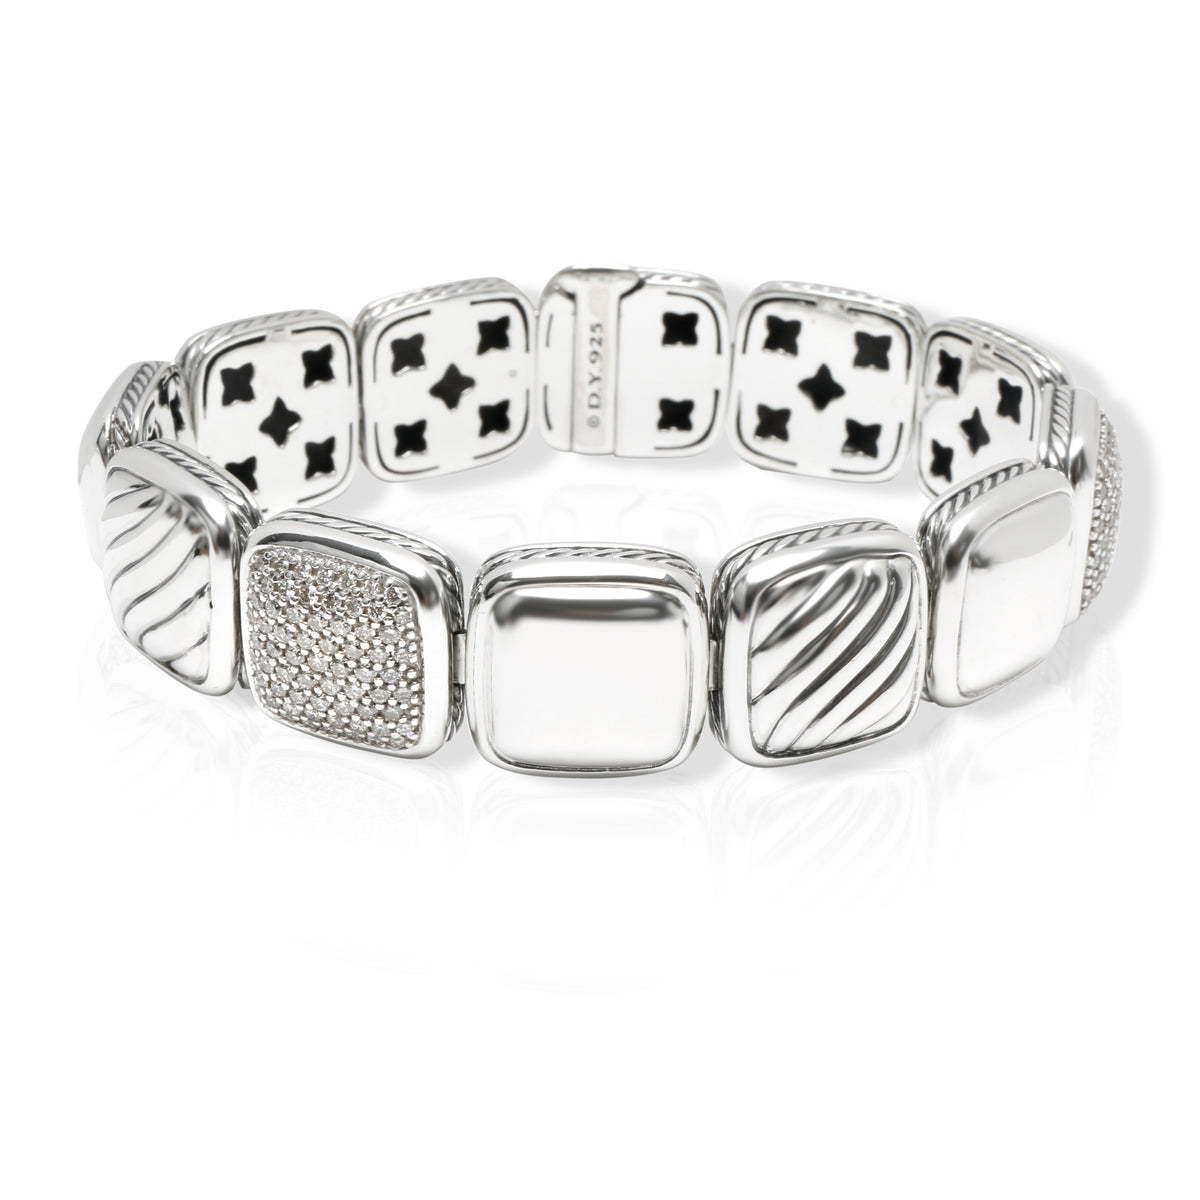 David Yurman Chiclet Diamond Bracelet in  Sterling Silver 1.75 CTW